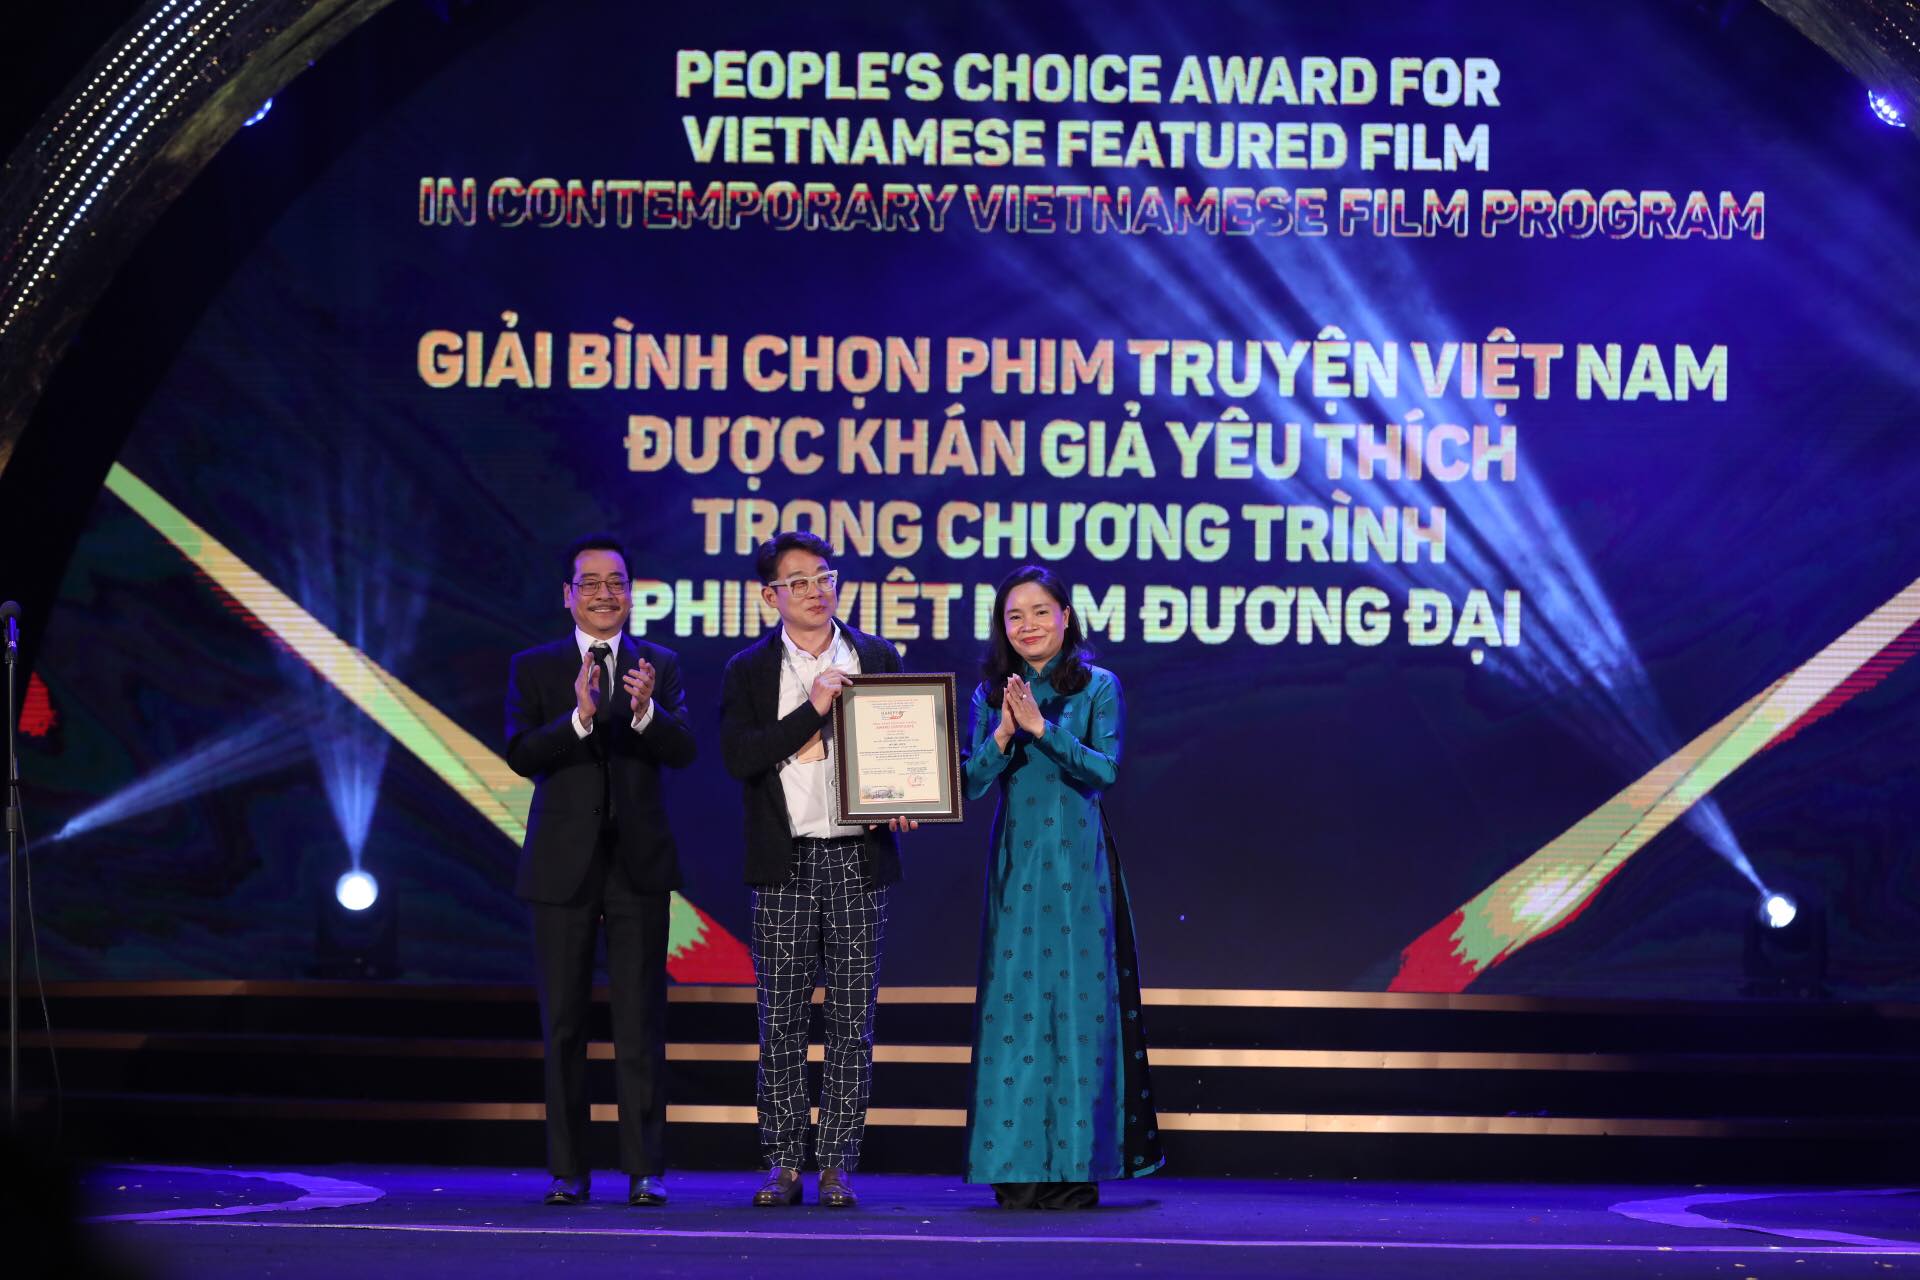 Giải bình chọn phim Việt Nam được khán giả yêu thích trong Chương trình phim Việt Nam đương đại.